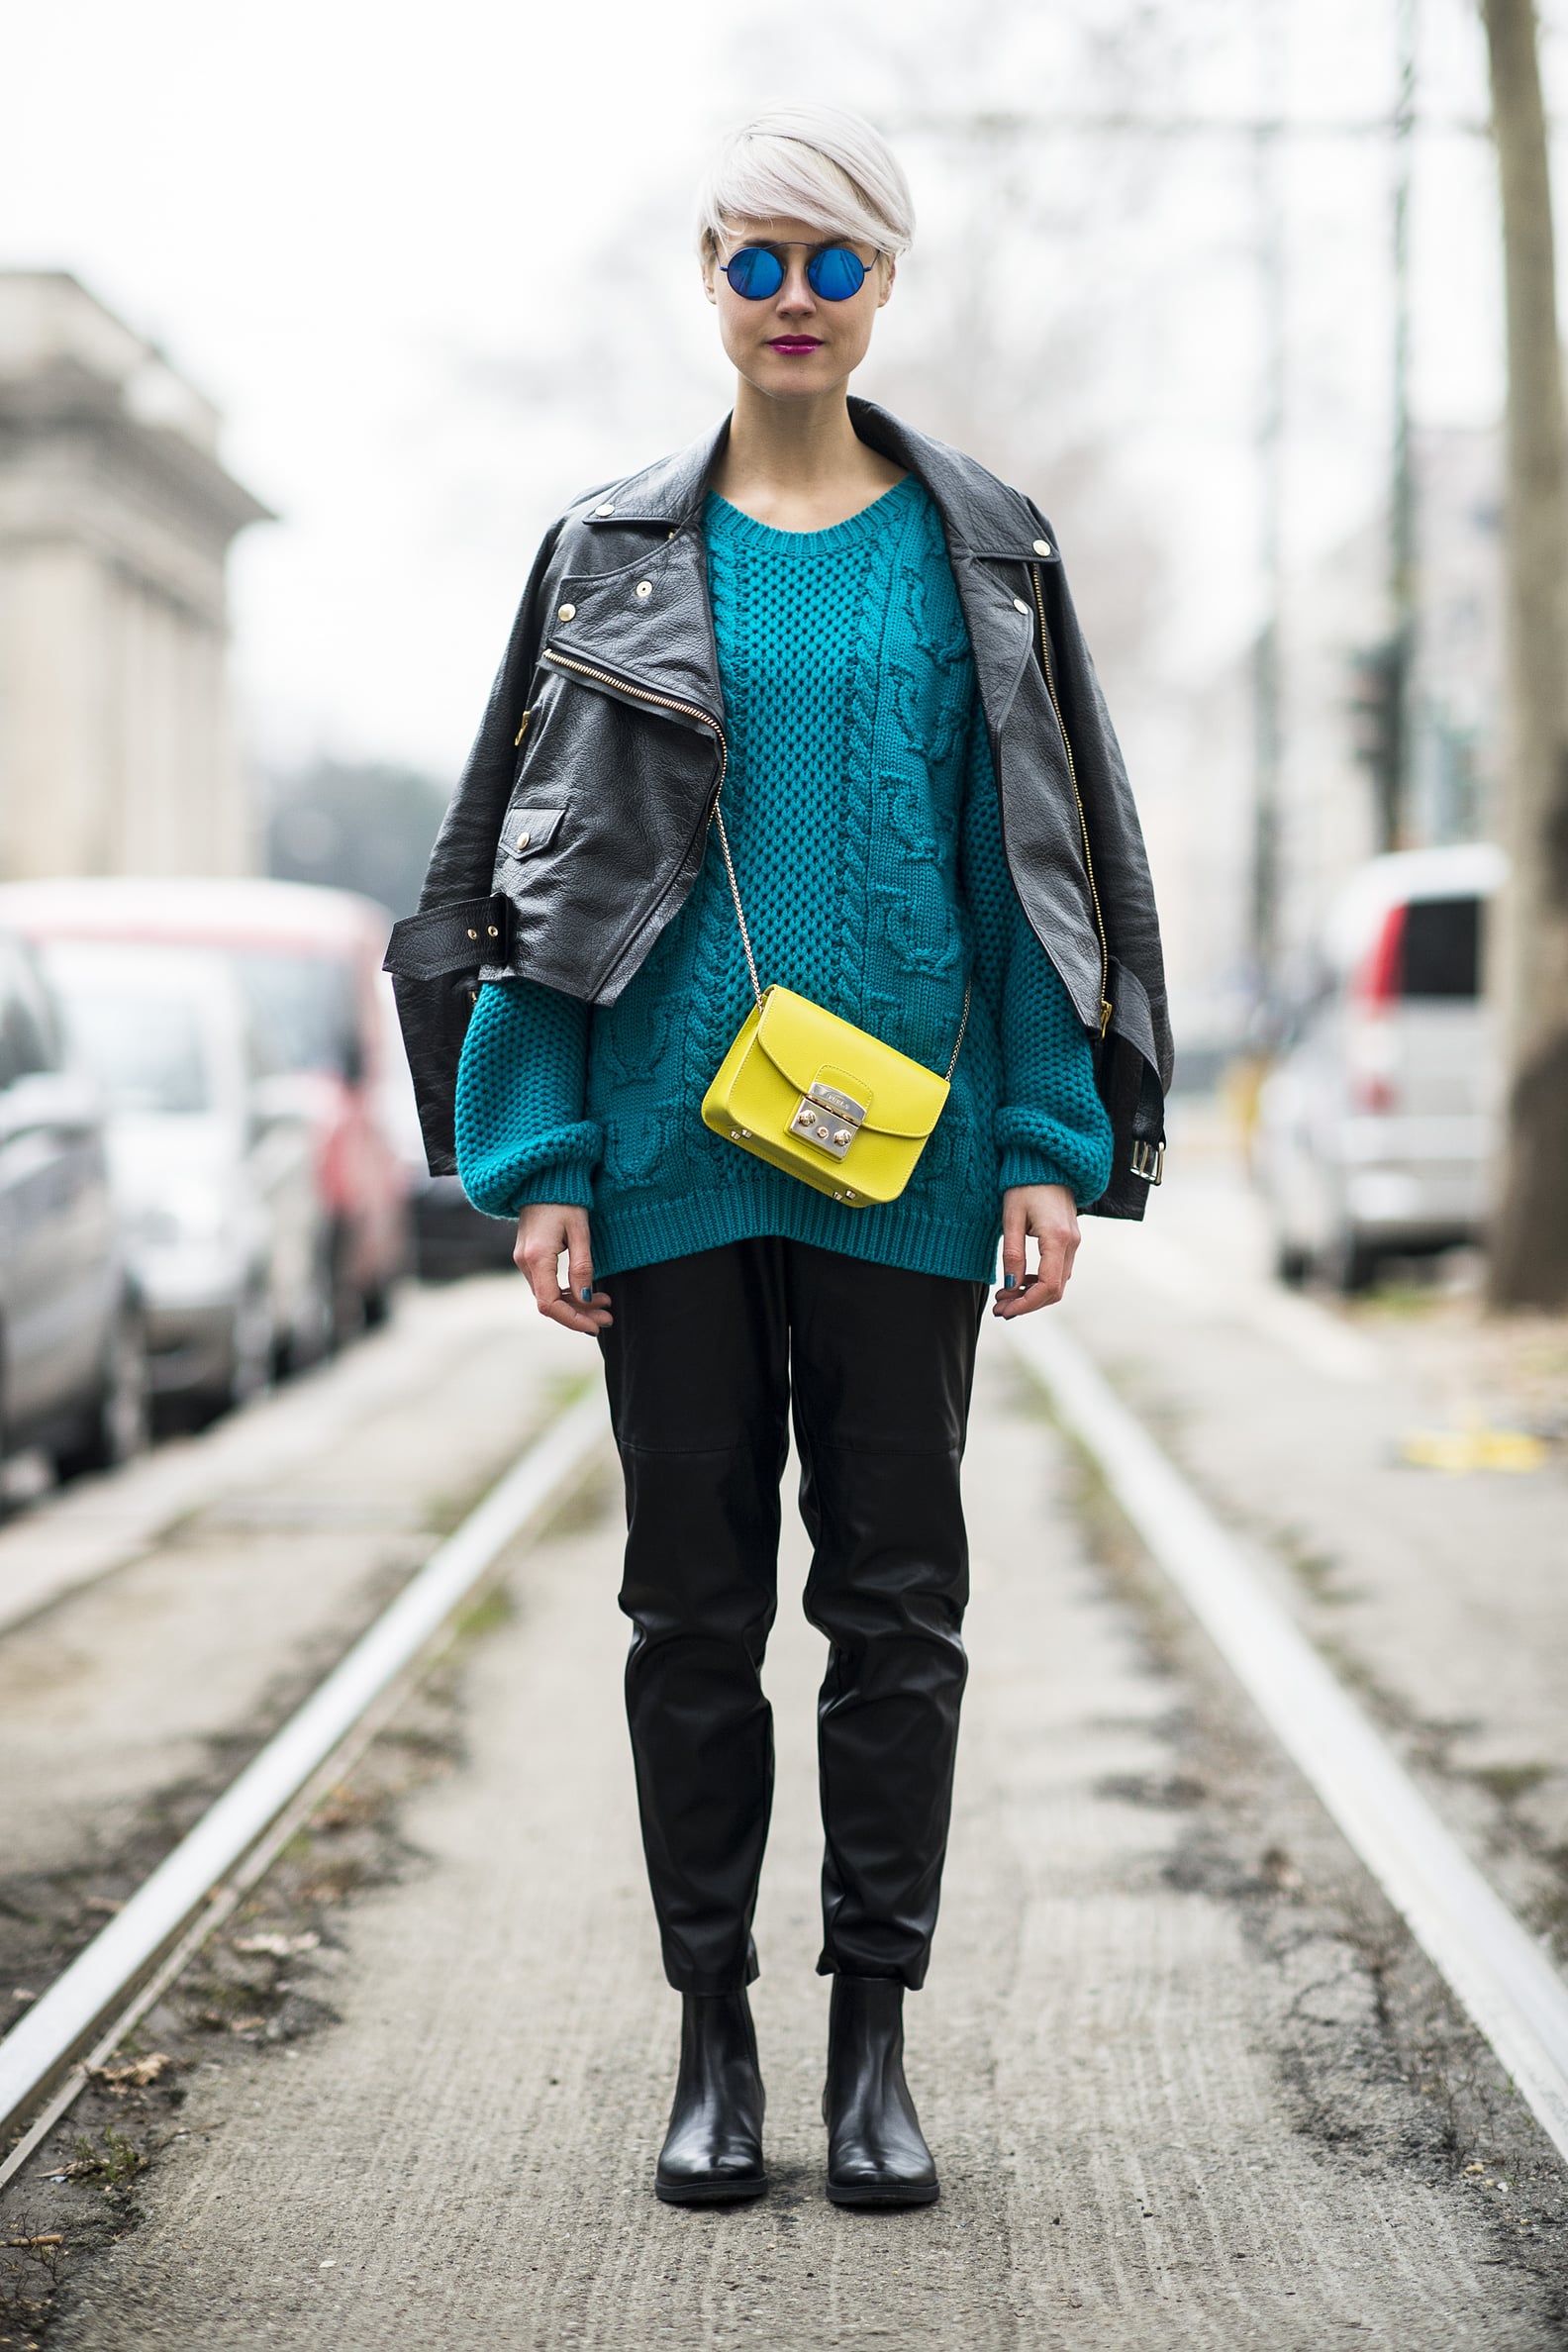 Street Style at Menswear Fashion Week 2014 | POPSUGAR Fashion